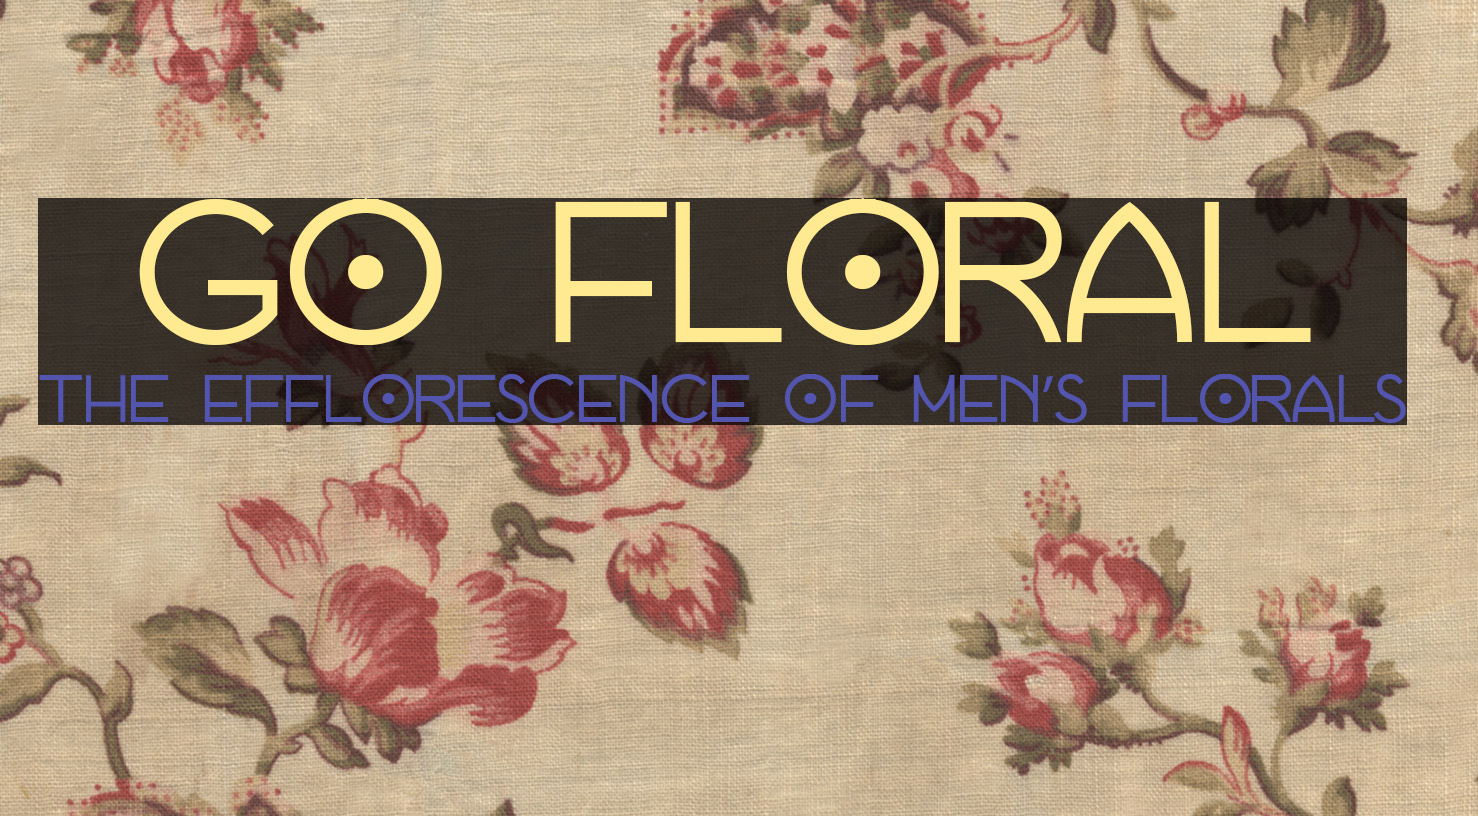 Go Floral: The Efflorescence of Men’s Florals